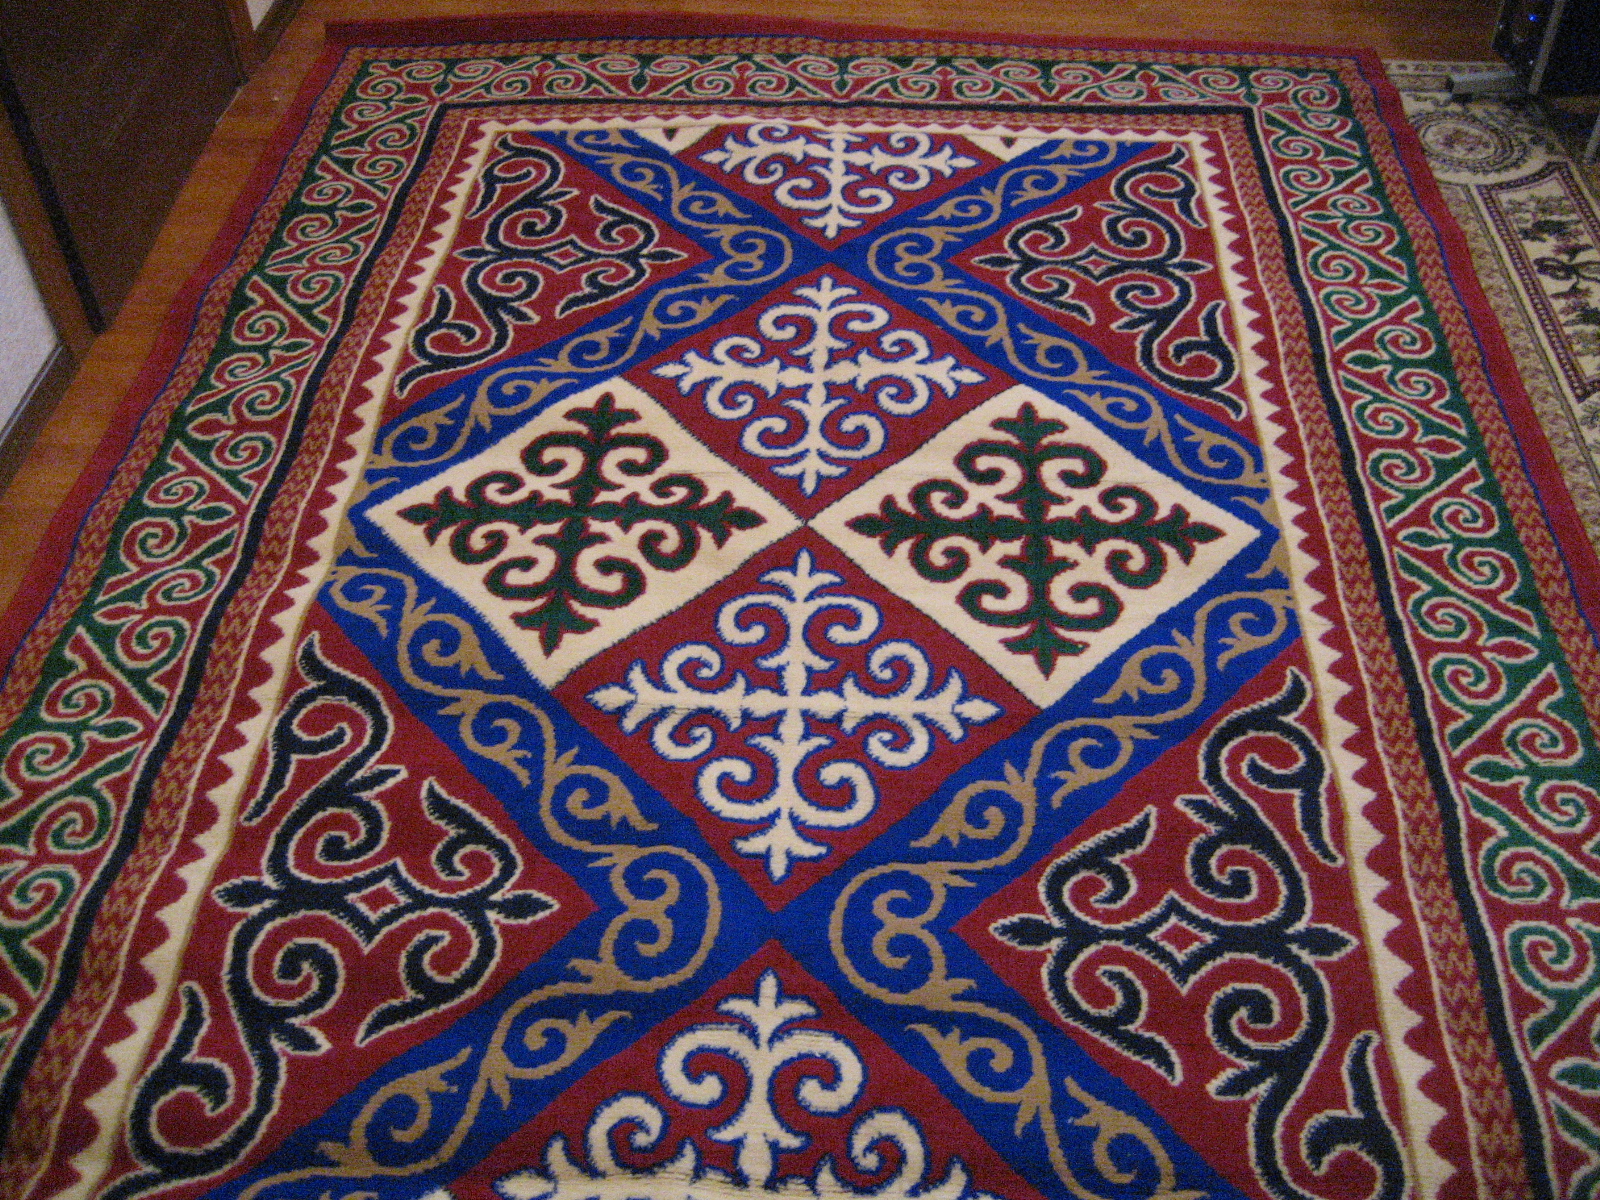 Монгольский национальный орнамент на ковре